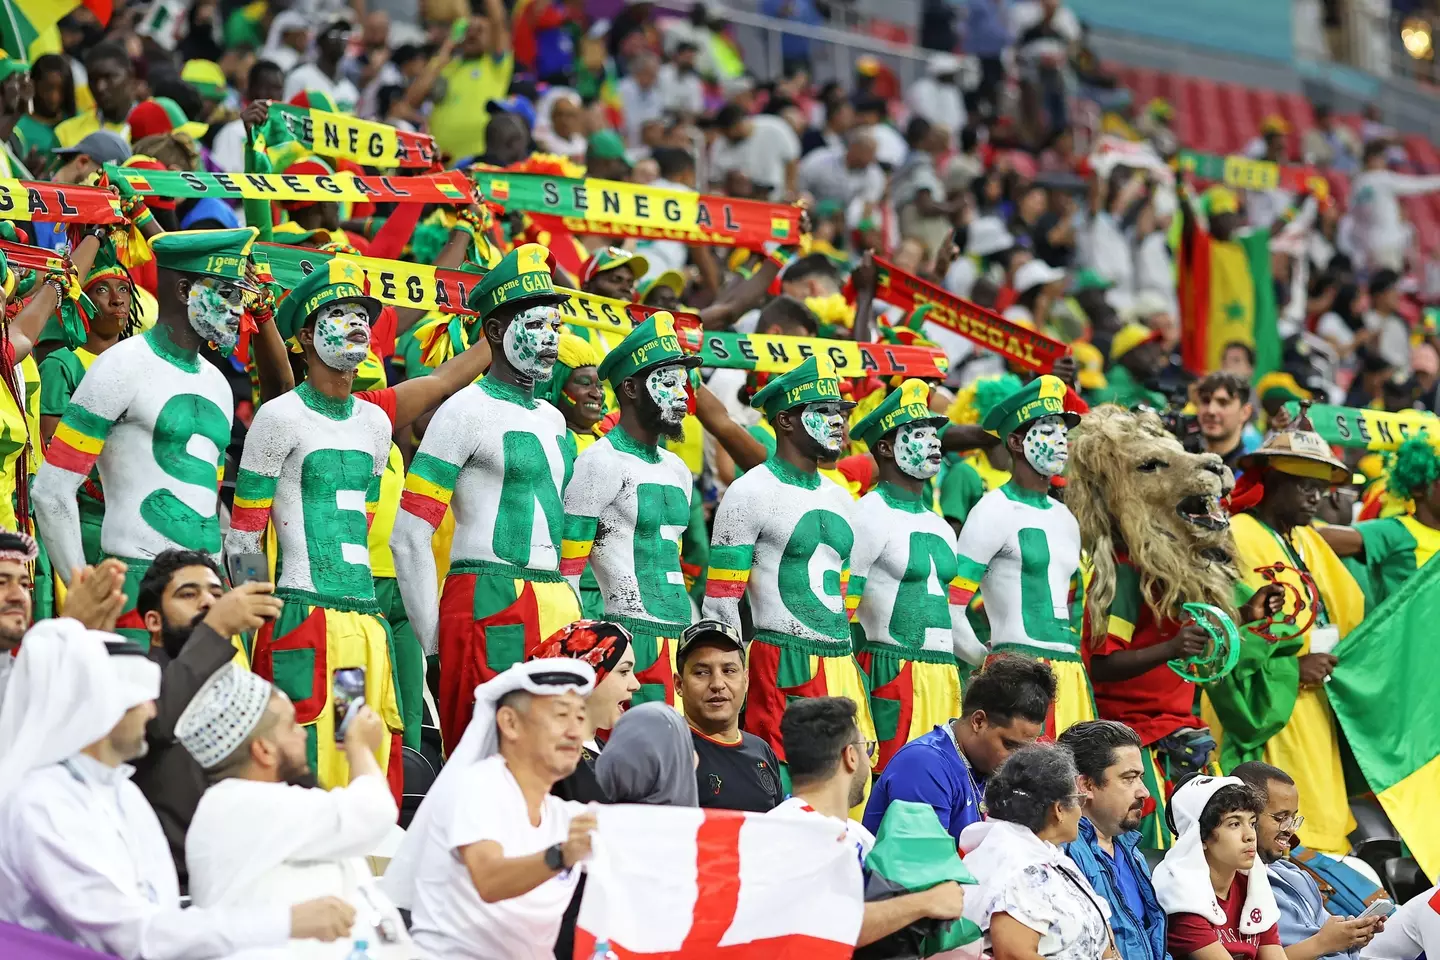 Senegal fans inside the Al Bayt Stadium. (Image